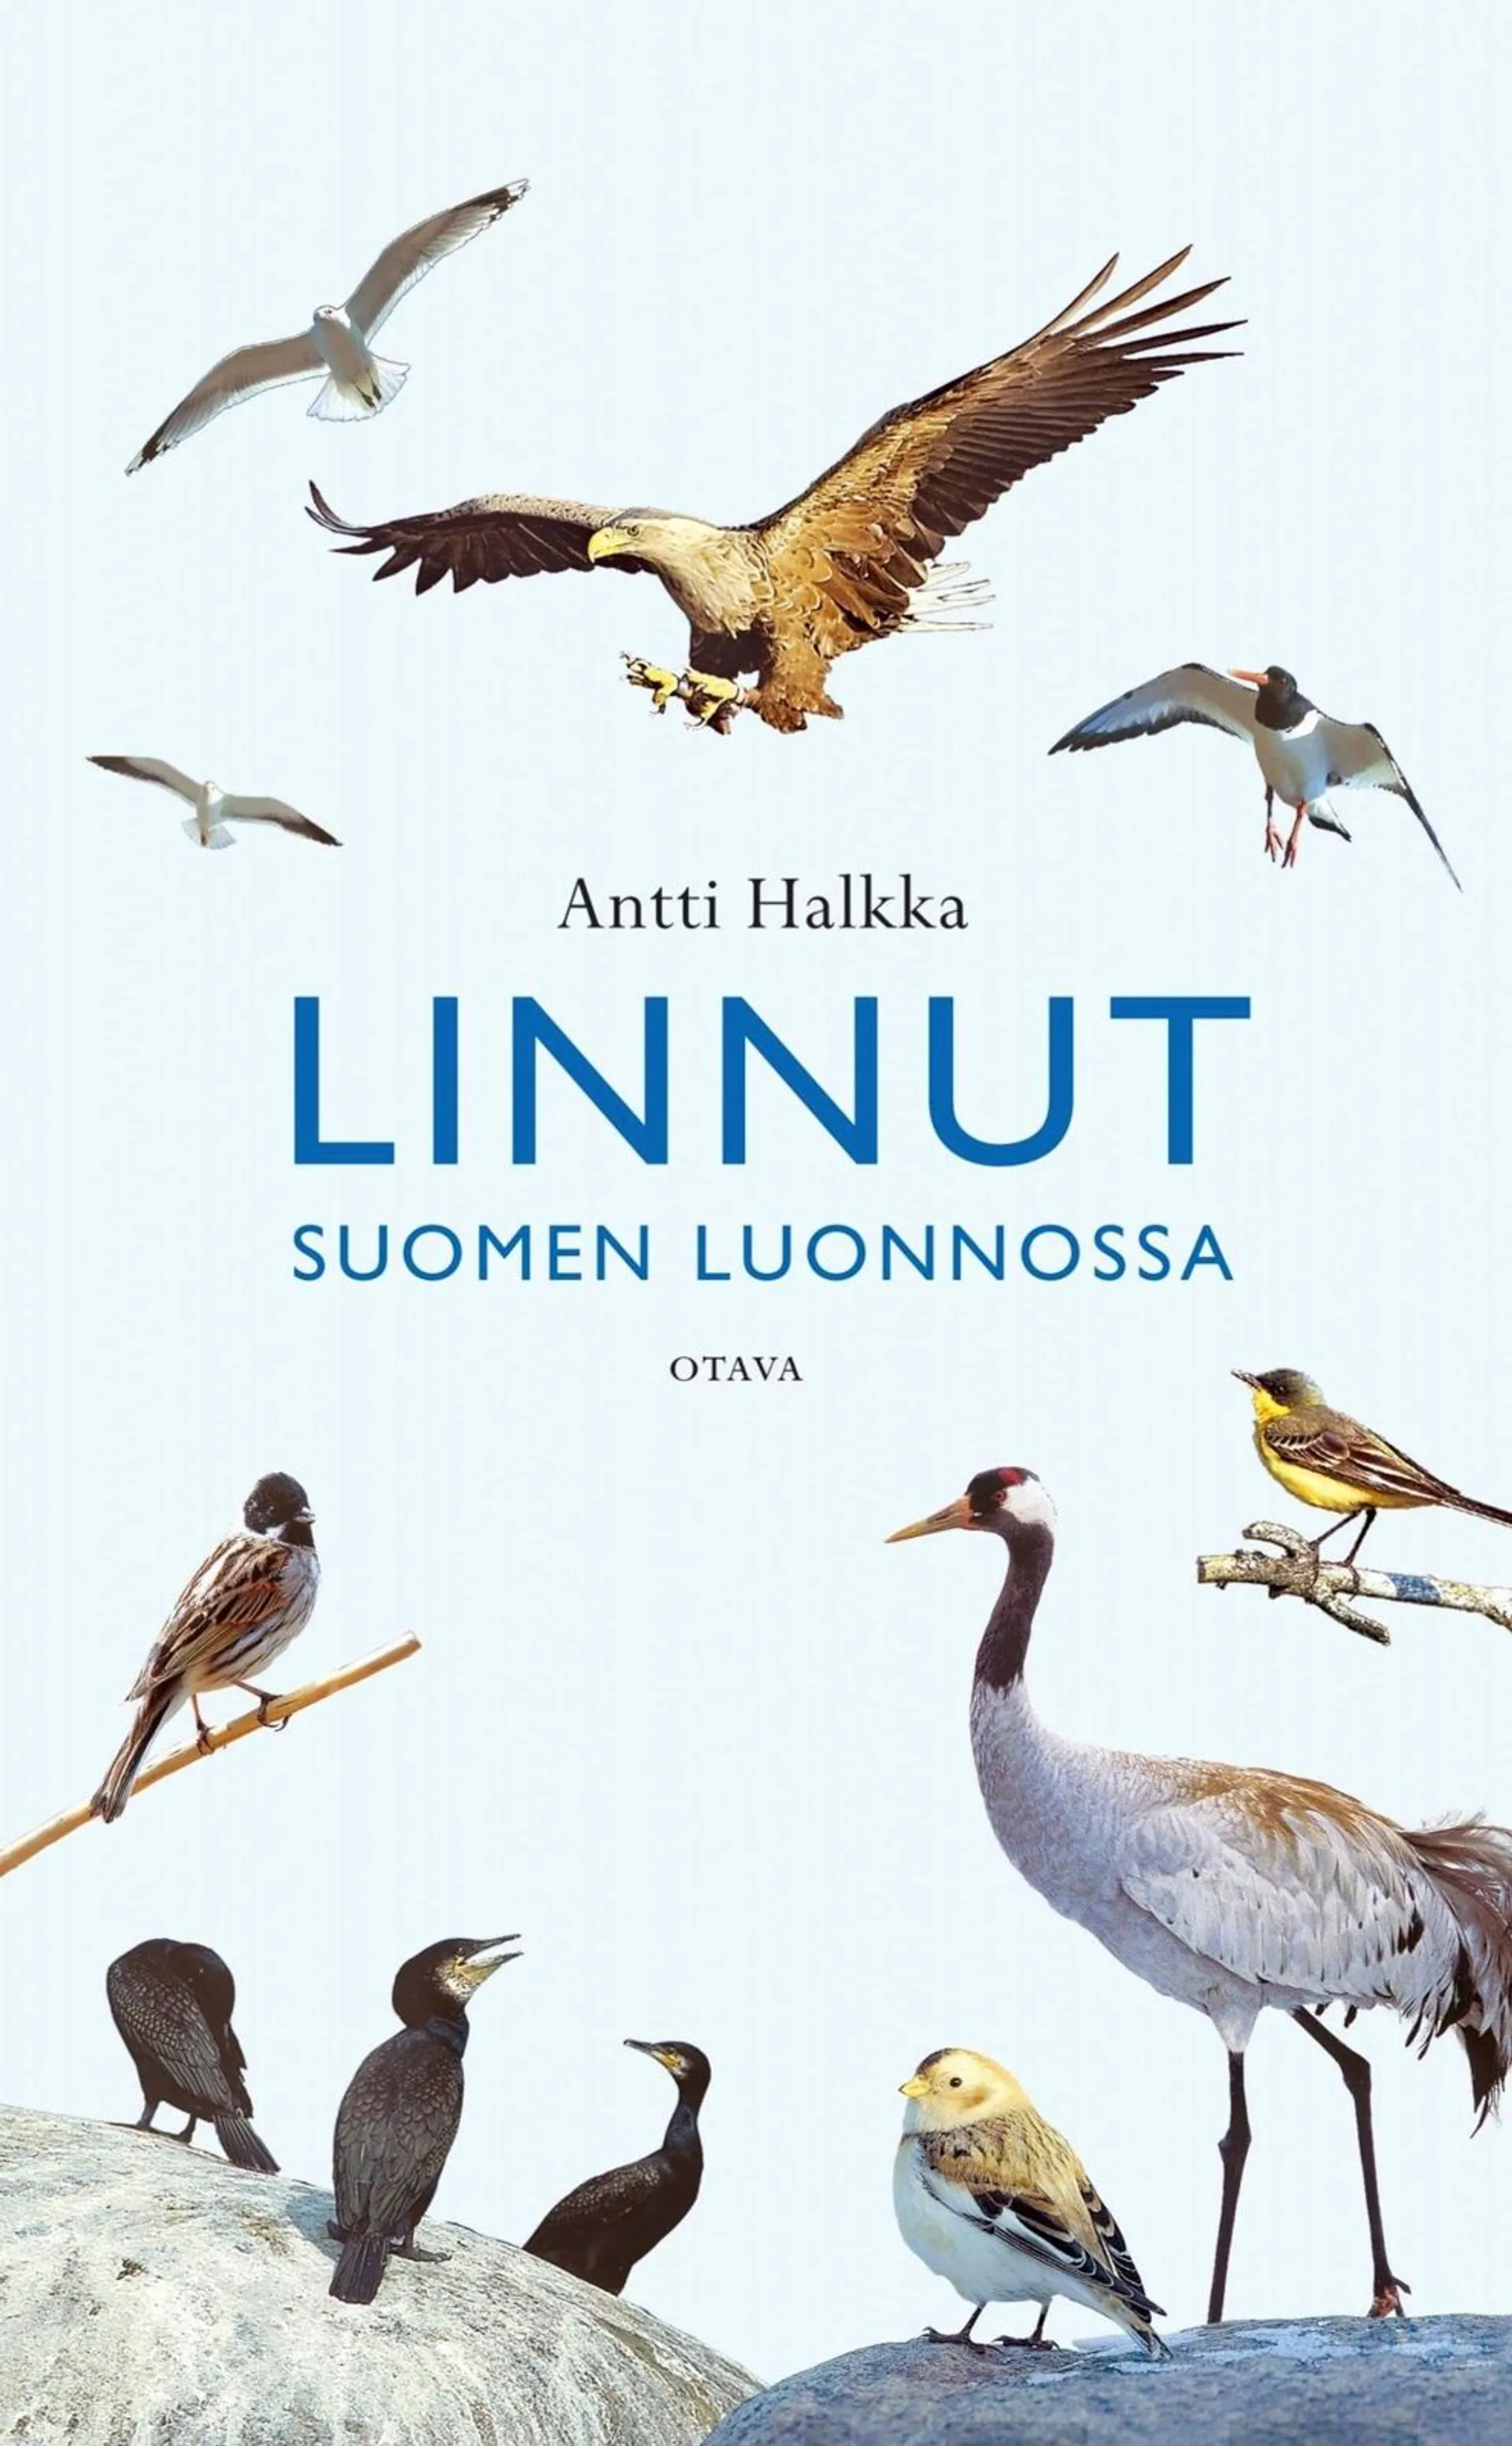 Halkka, Linnut Suomen luonnossa